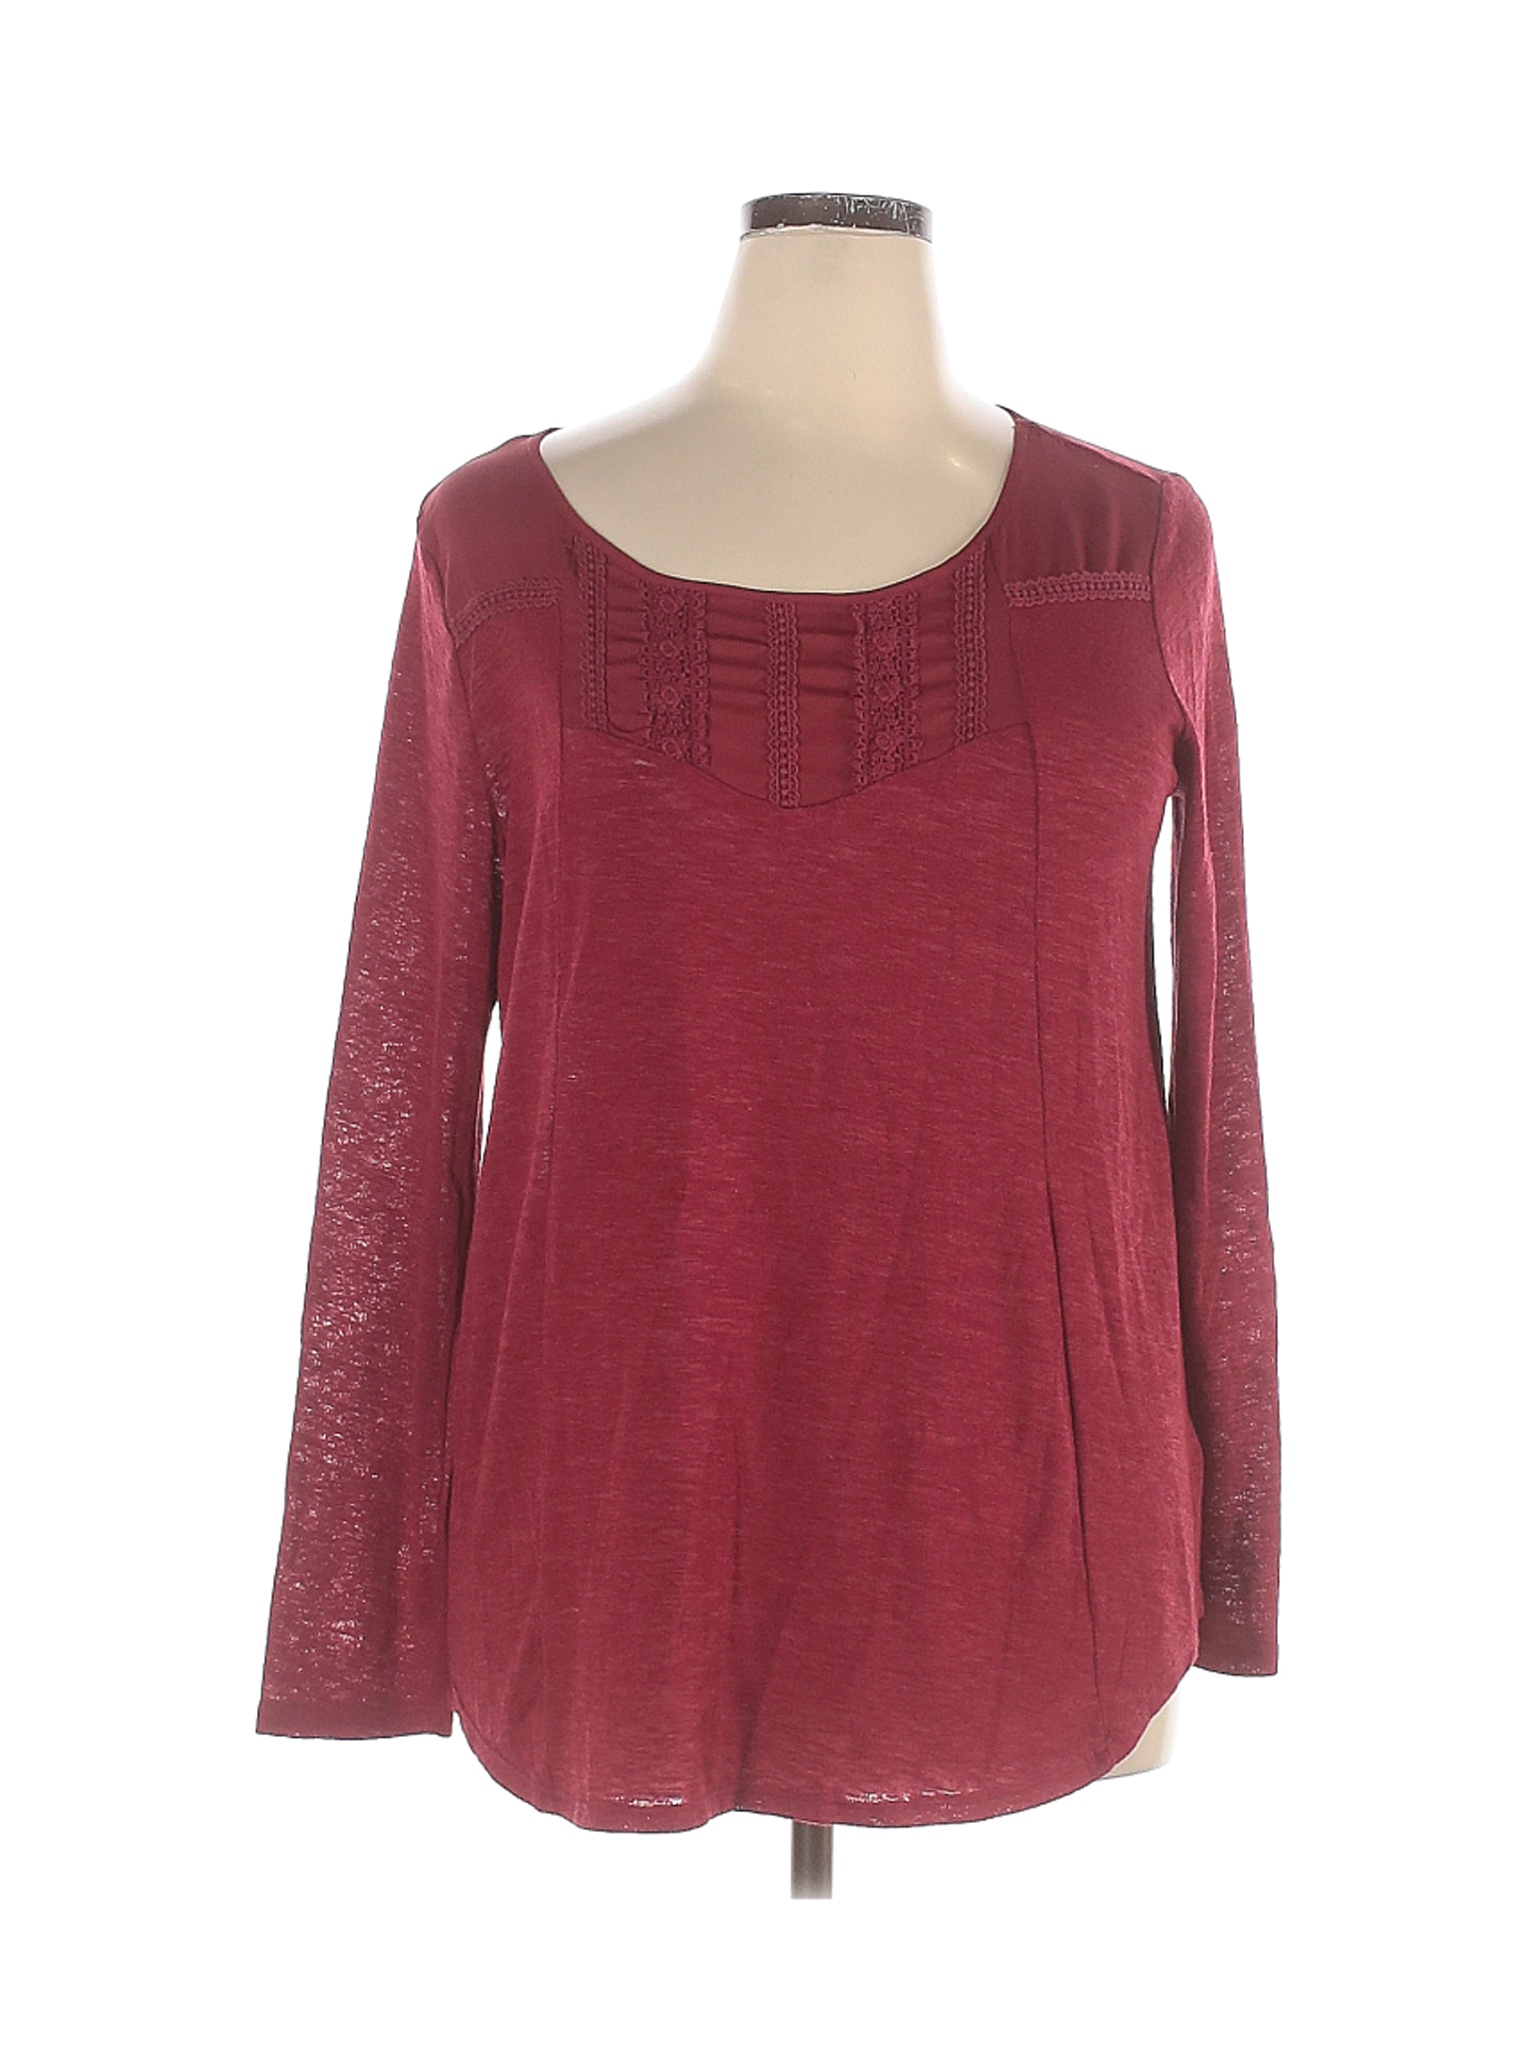 Kohl's Women Red Long Sleeve Top XL | eBay